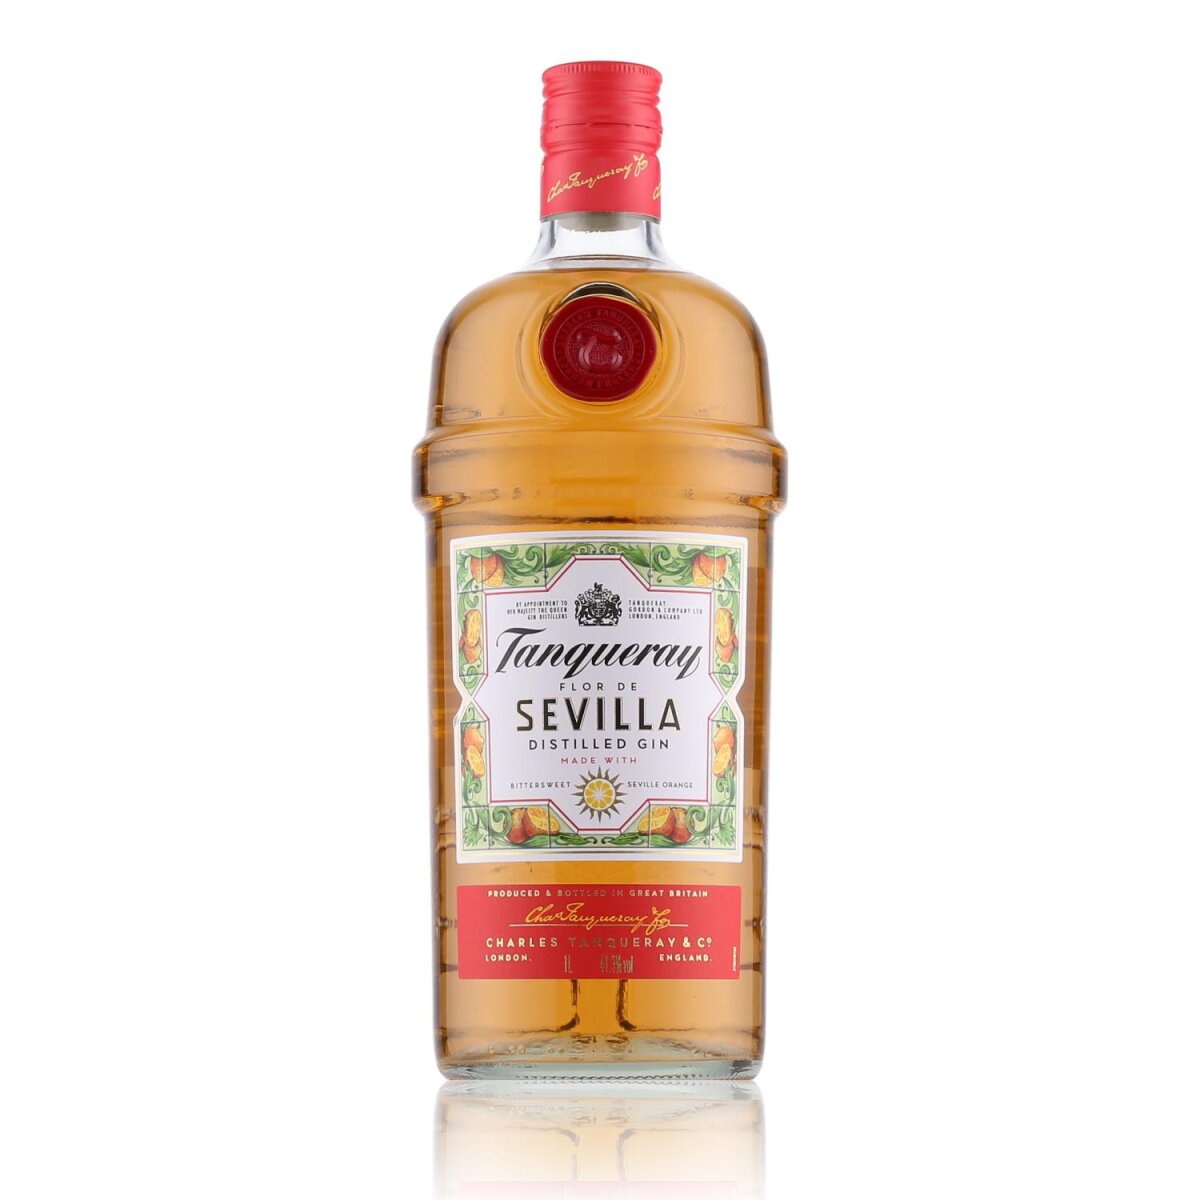 Tanqueray Flor de Sevilla Distilled Gin 41,3% Vol. 1l, 24,19 €